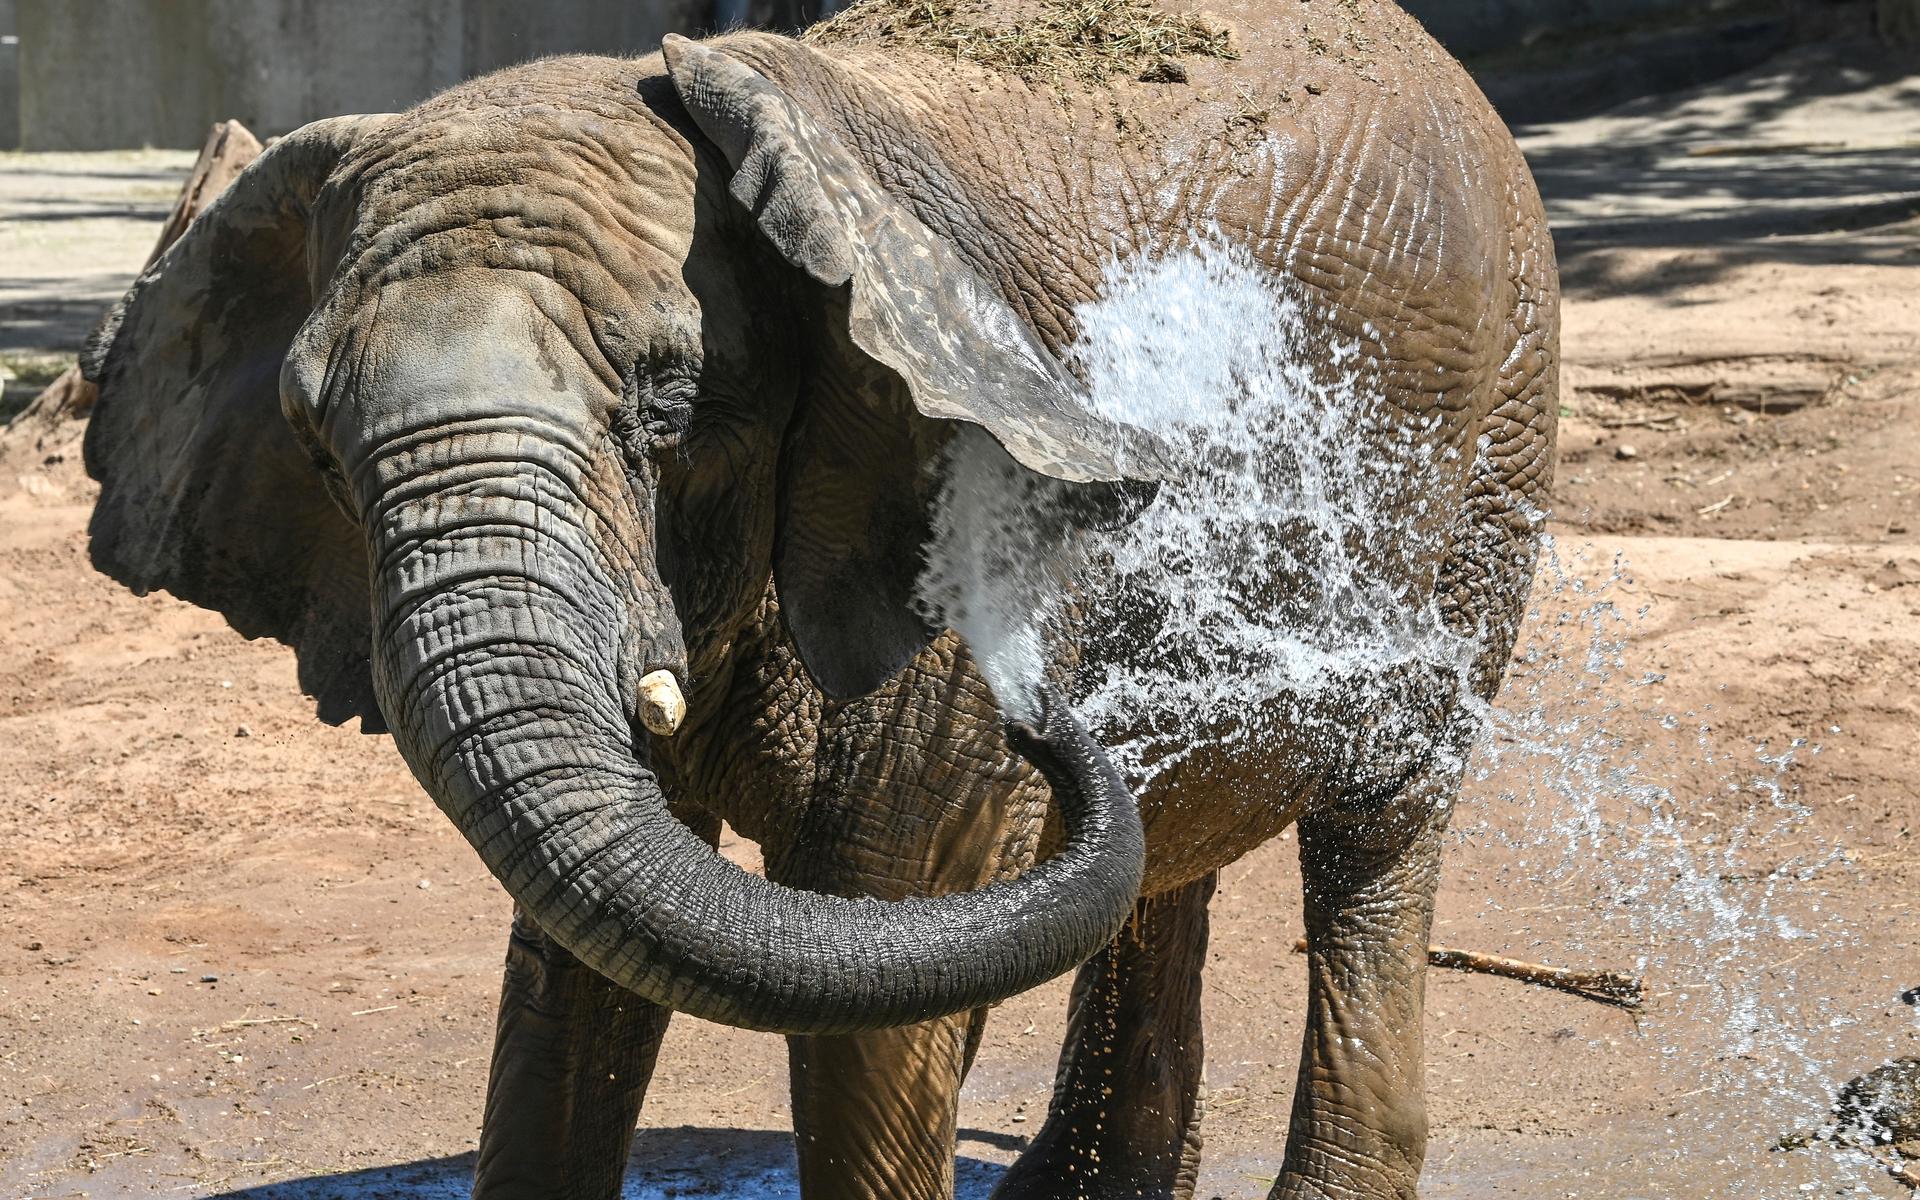 Inte bara människor behöver svalka sig när det är värmebölja, en elefant på en djurpark i Tyskland sprutar vatten på sig för att kyla ner sig.